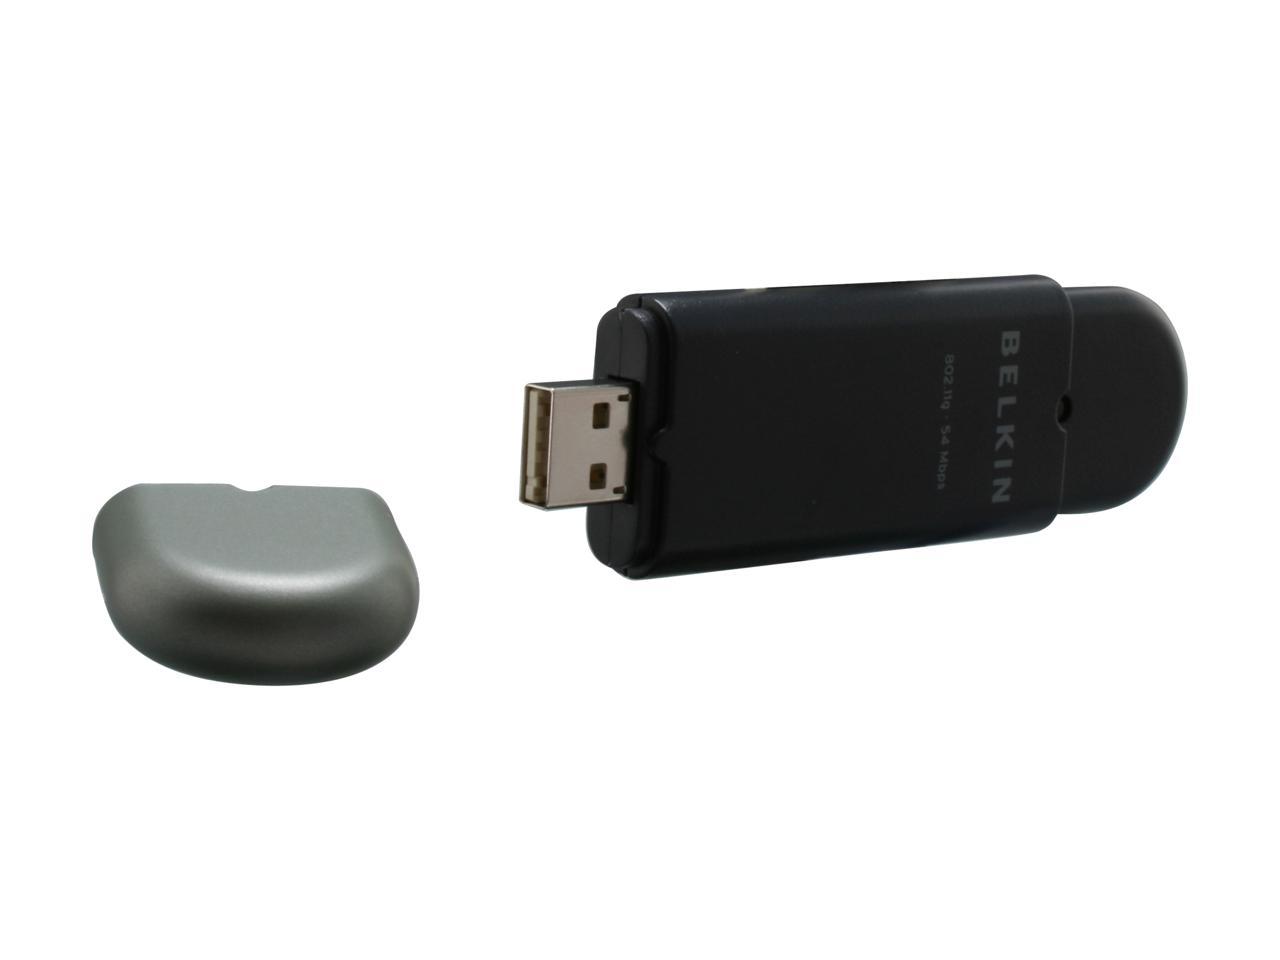 Belkin Wireless G Plus USB Network Adapter.BRAND NEW 